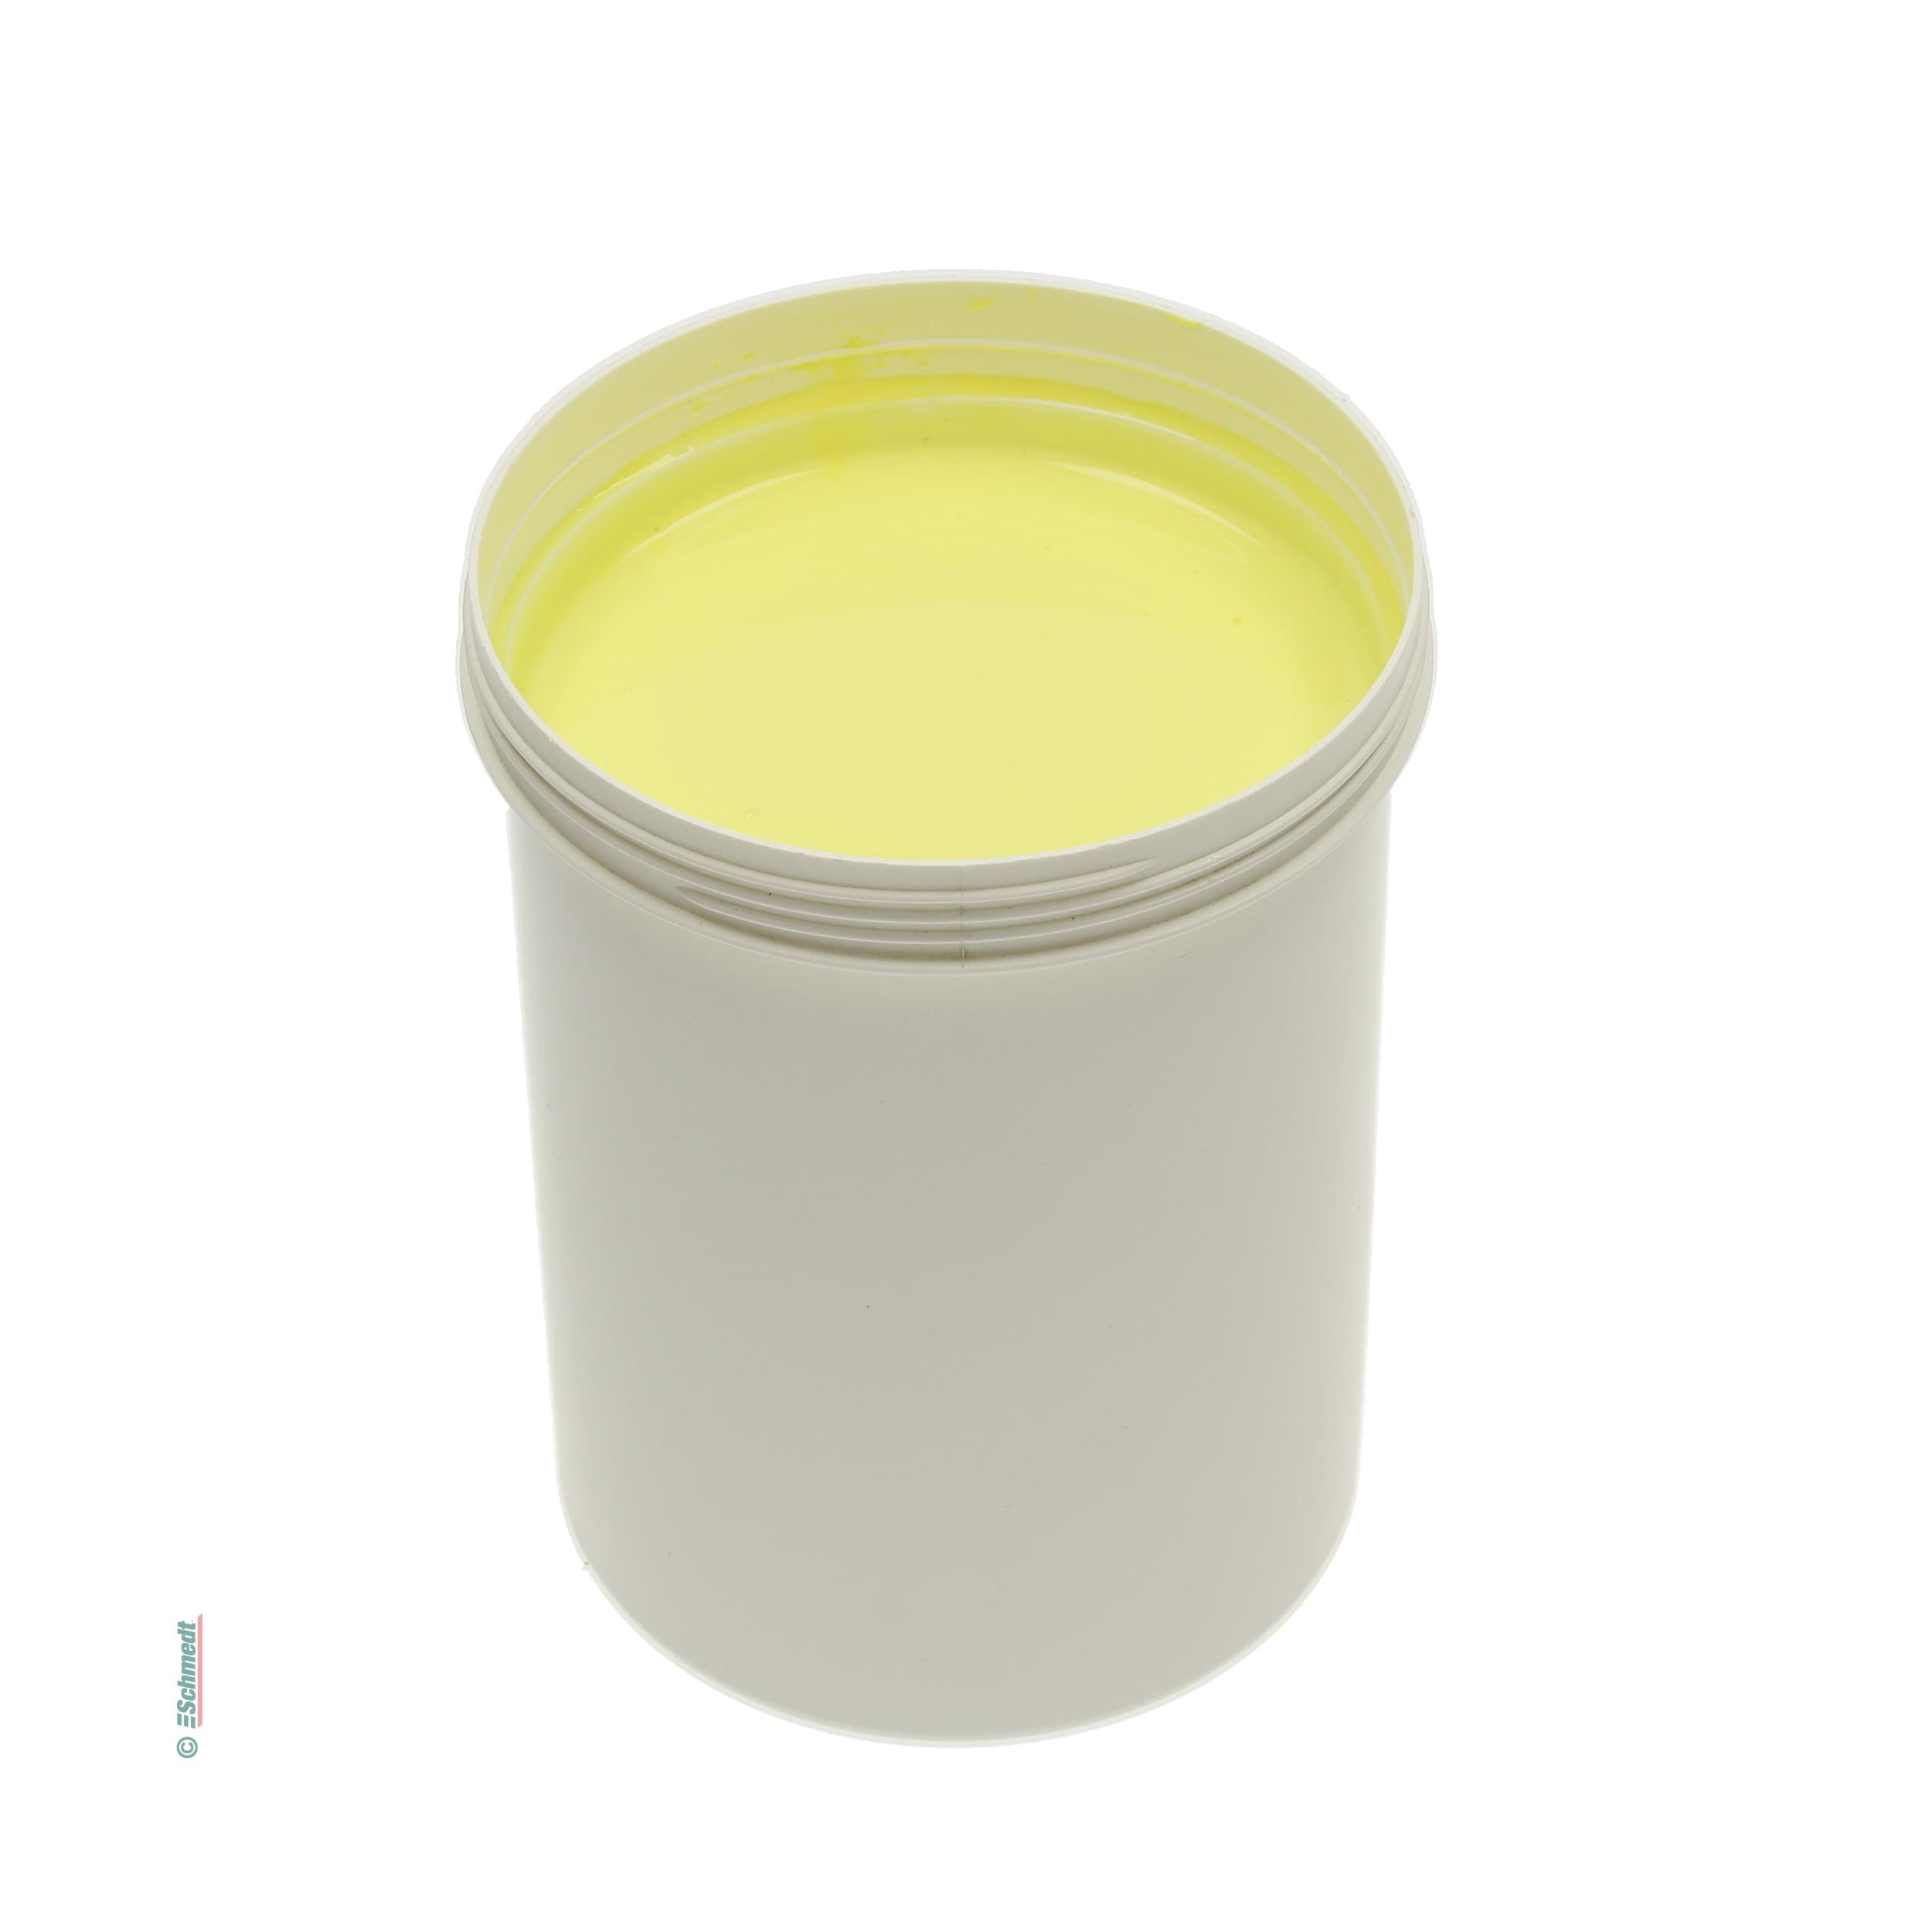 Peinture de colle - Couleur jaune - Contenu Bouteille / 990 ml - pour teindre colles à dispersion comme p. ex. pour bloc-notes ou livres à d... - image-1